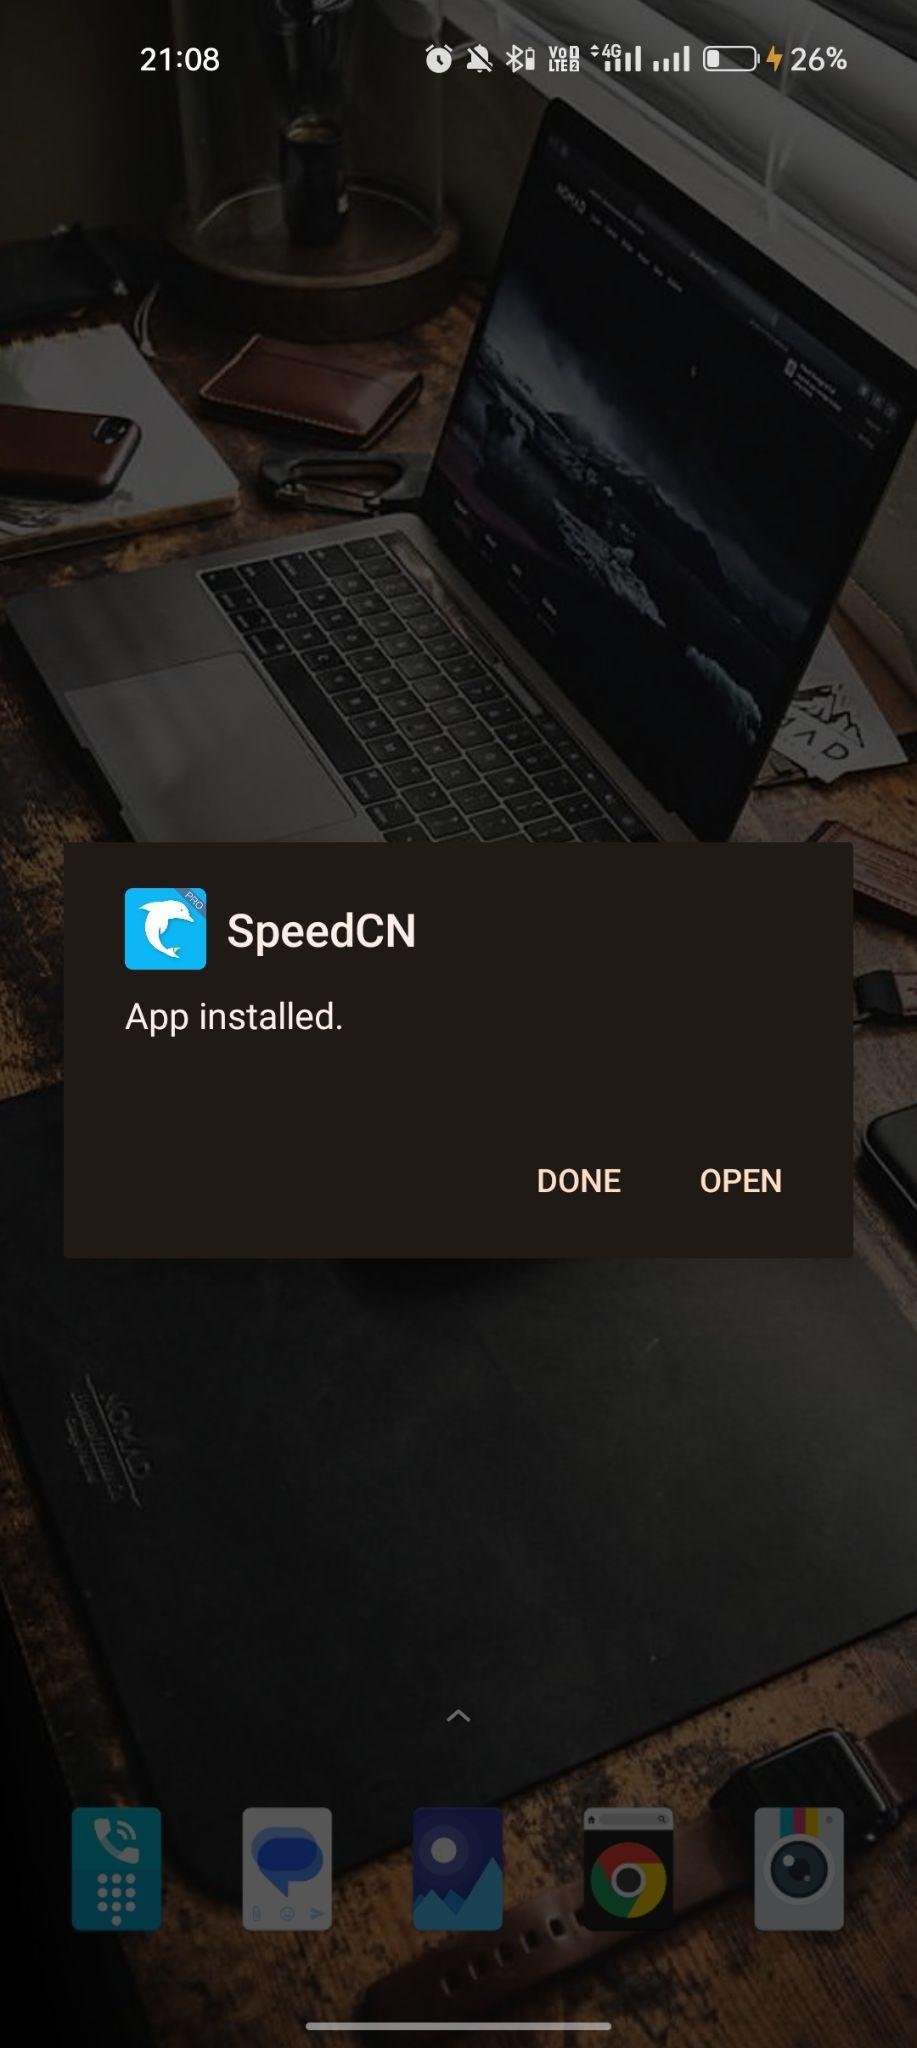 SpeedCN apk installed